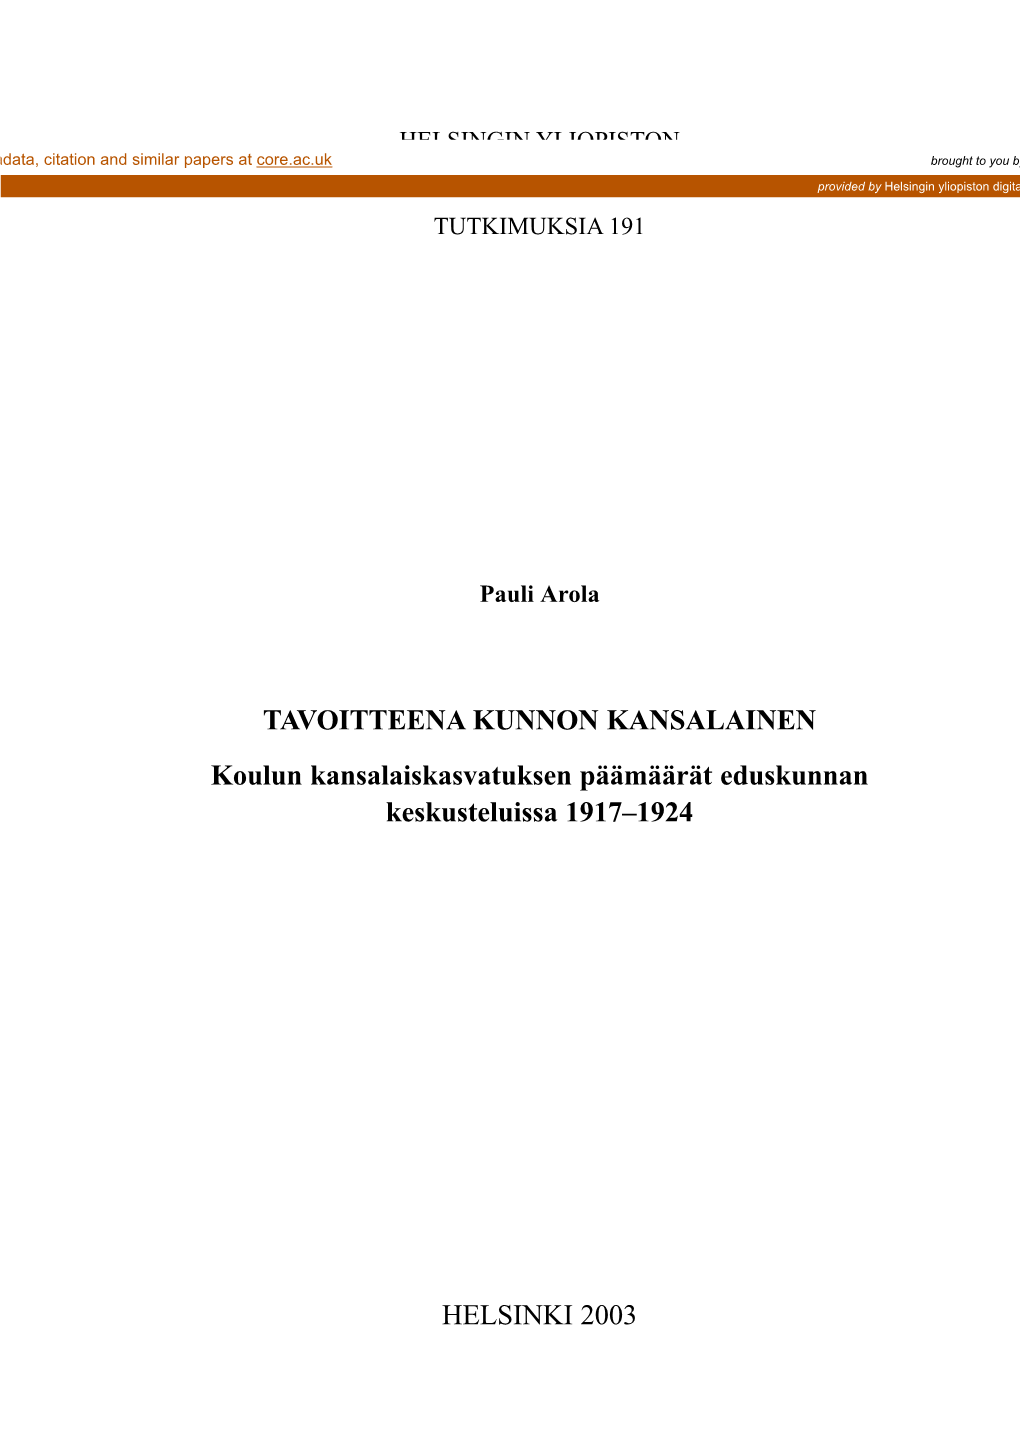 TAVOITTEENA KUNNON KANSALAINEN Koulun Kansalaiskasvatuksen Päämäärät Eduskunnan Keskusteluissa 1917–1924